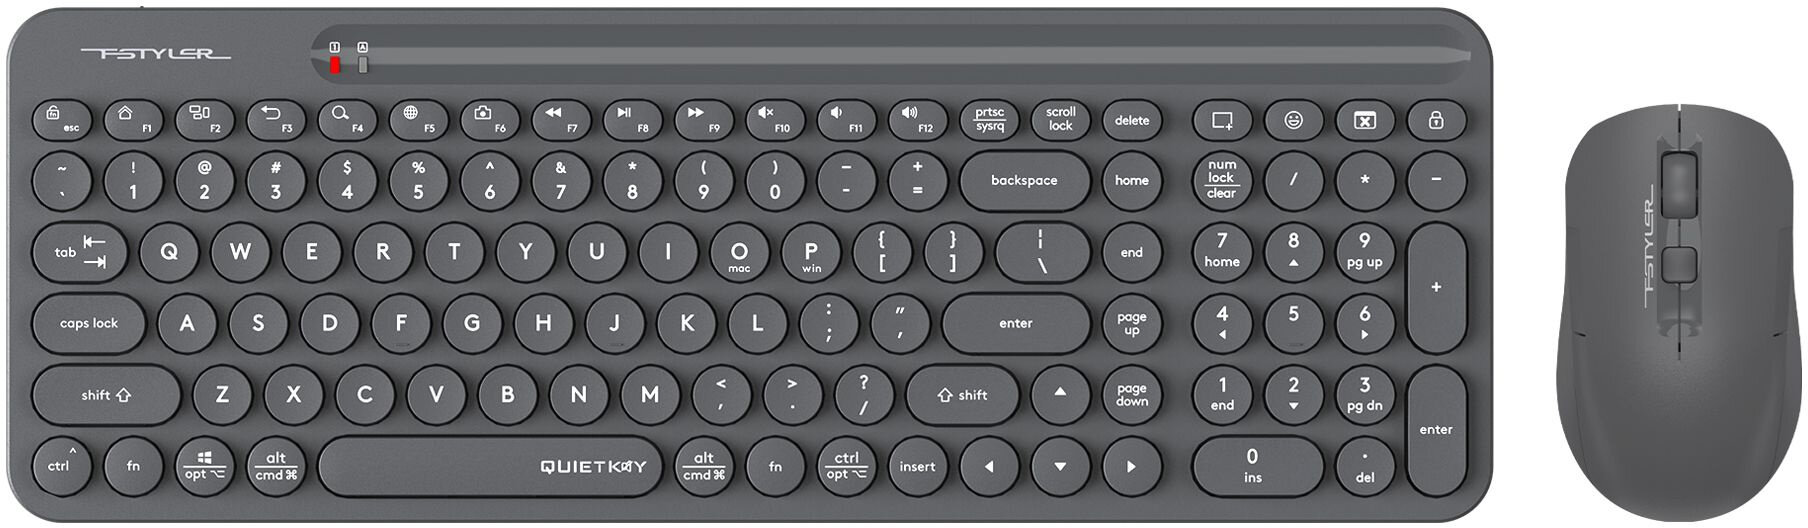 Клавиатура + мышь A4Tech Fstyler FG3300 Air клав: серый мышь: серый USB беспроводная slim Multimedia